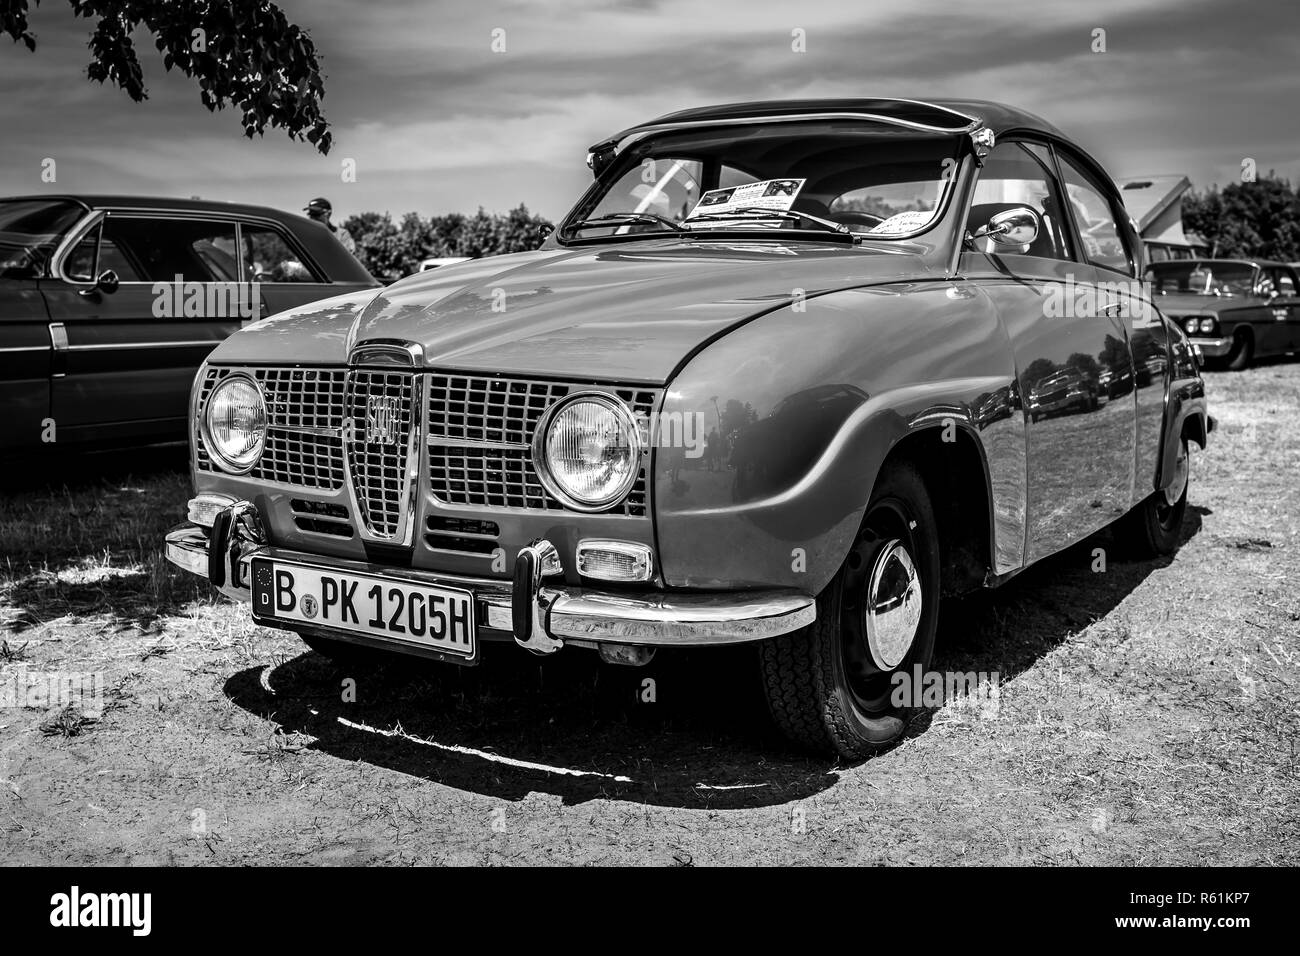 PAAREN IM GLIEN, Germania - 19 Maggio 2018: vettura compatta Saab 96 V4, 1967. In bianco e nero. Die Oldtimer Show 2018. Foto Stock